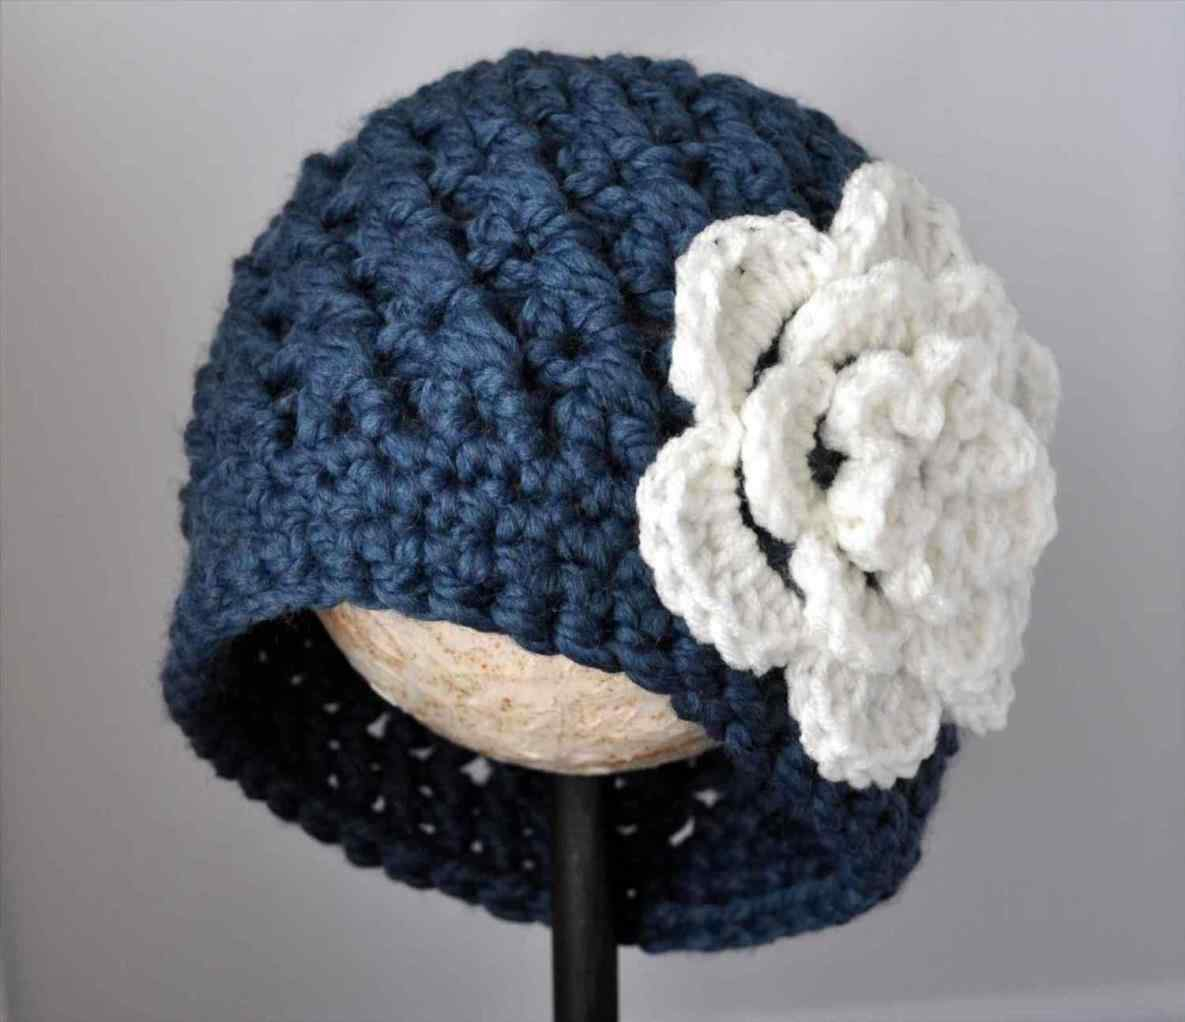 Bulky Yarn Crochet Hat Pattern Crochet Ba Hat Pattern With Super Bulky Yarn How To Make S Easy